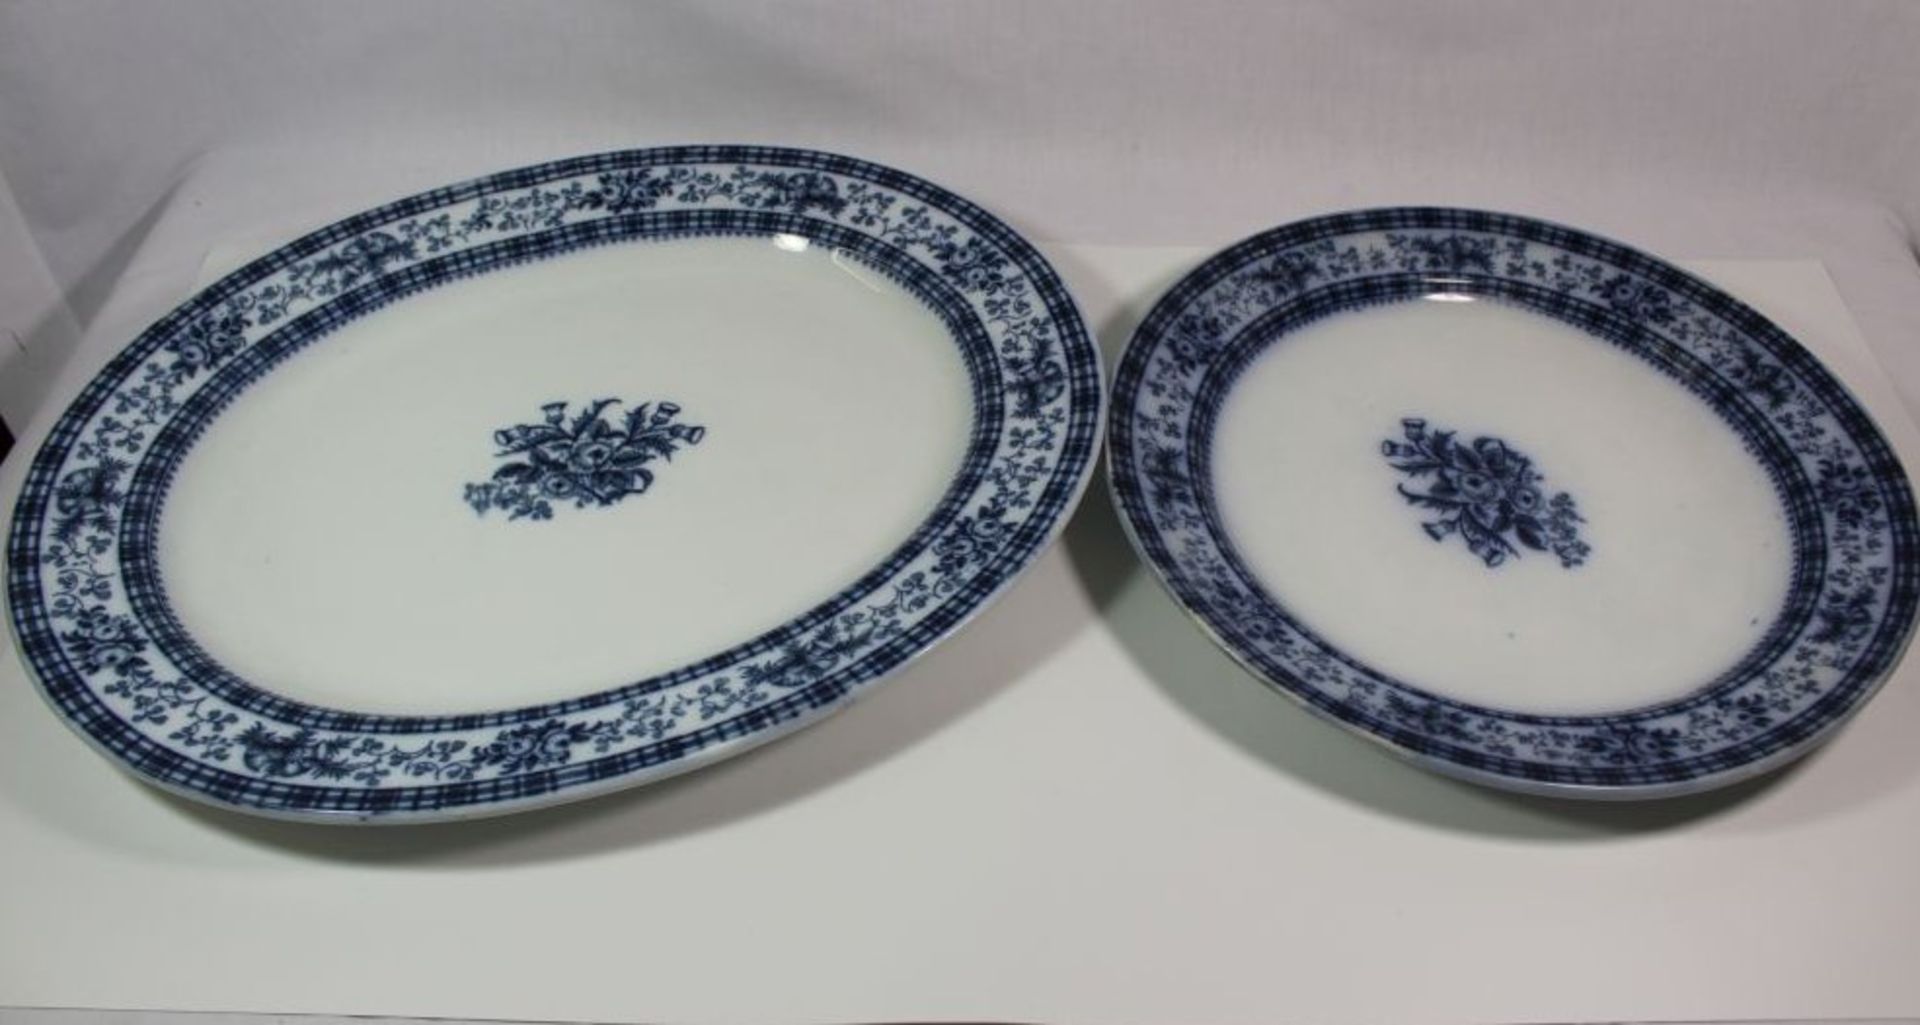 gr. Deckelterinne, 2 div. ovale Plattem und runder Teller, Douglas, England, blaues florales - Bild 3 aus 3